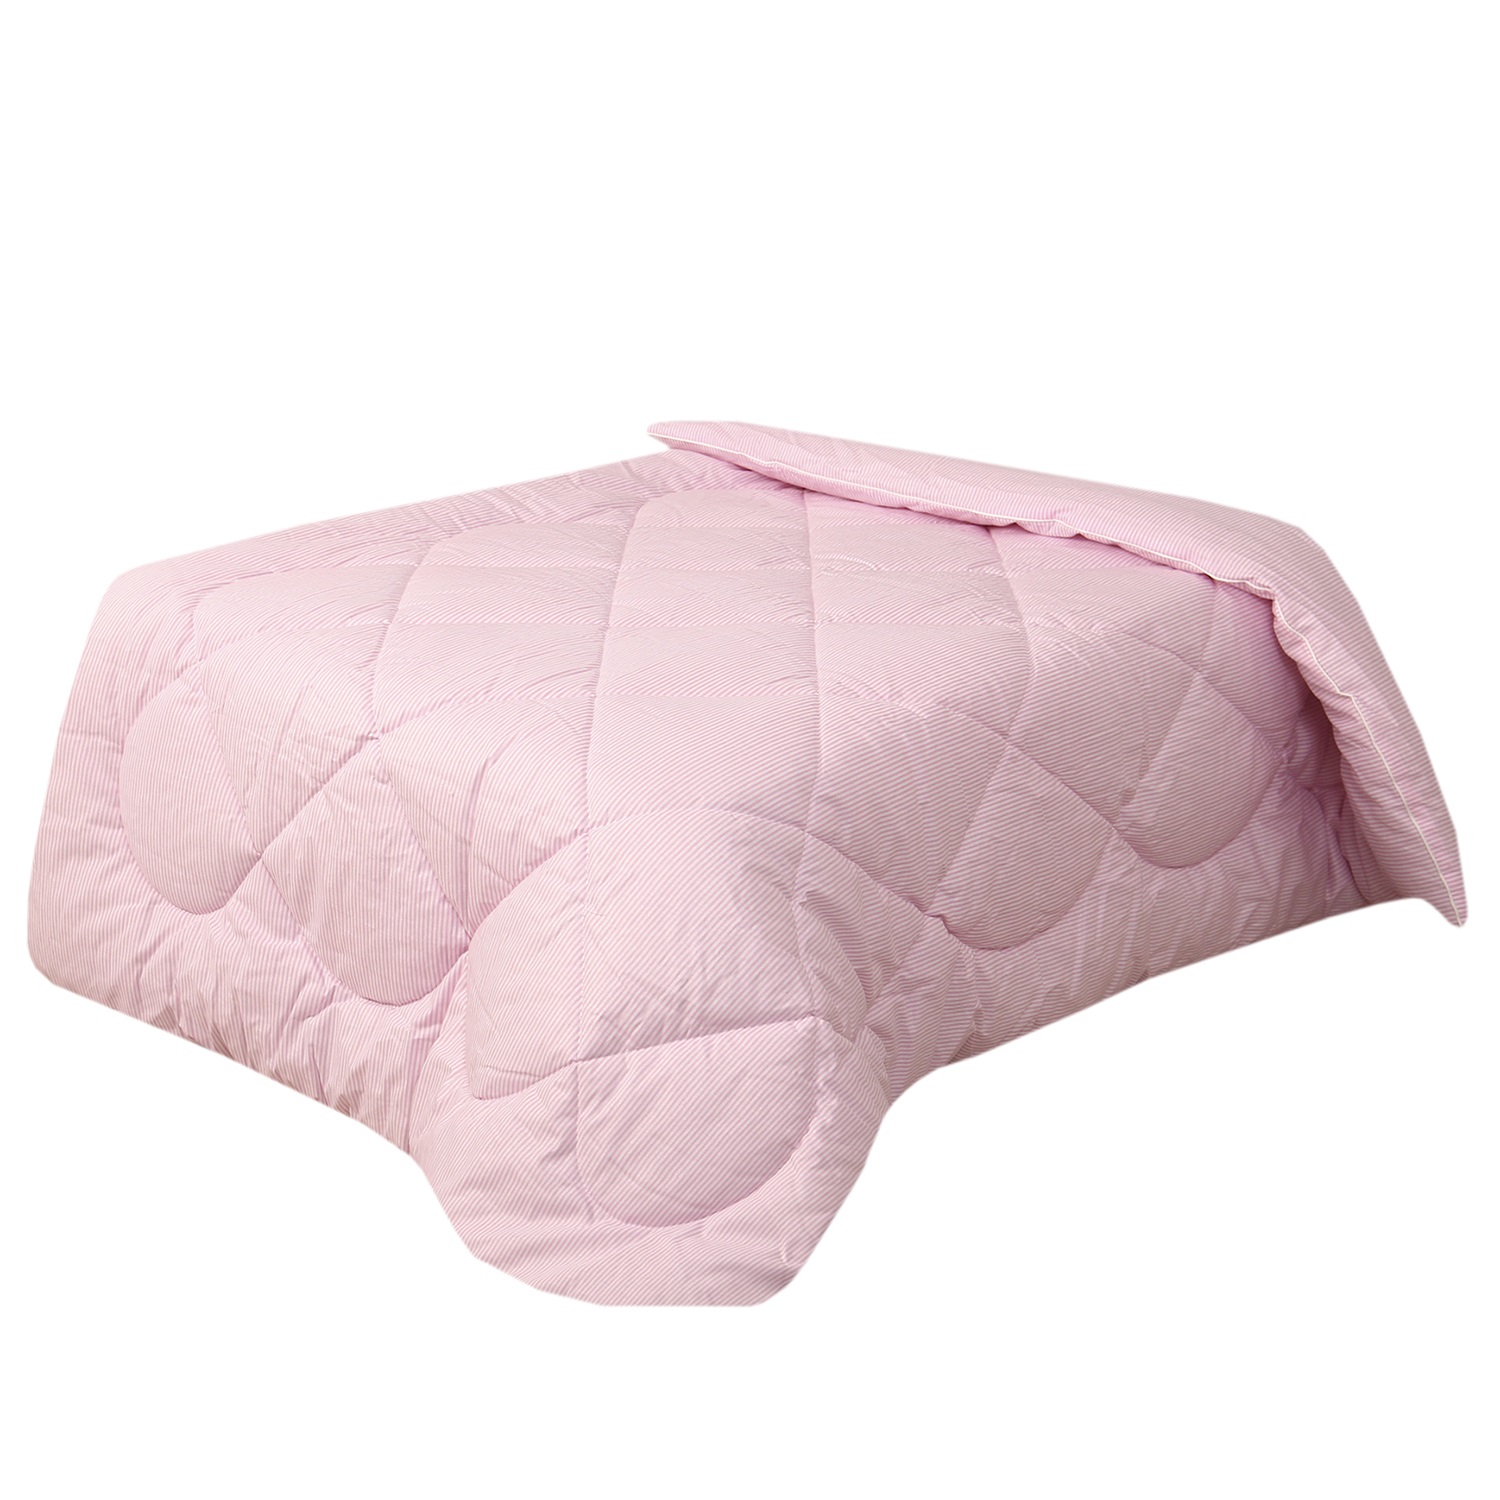 Одеяло Спаленка-kids детское Sweets 1.5-спальное розовые полоски - фото 2